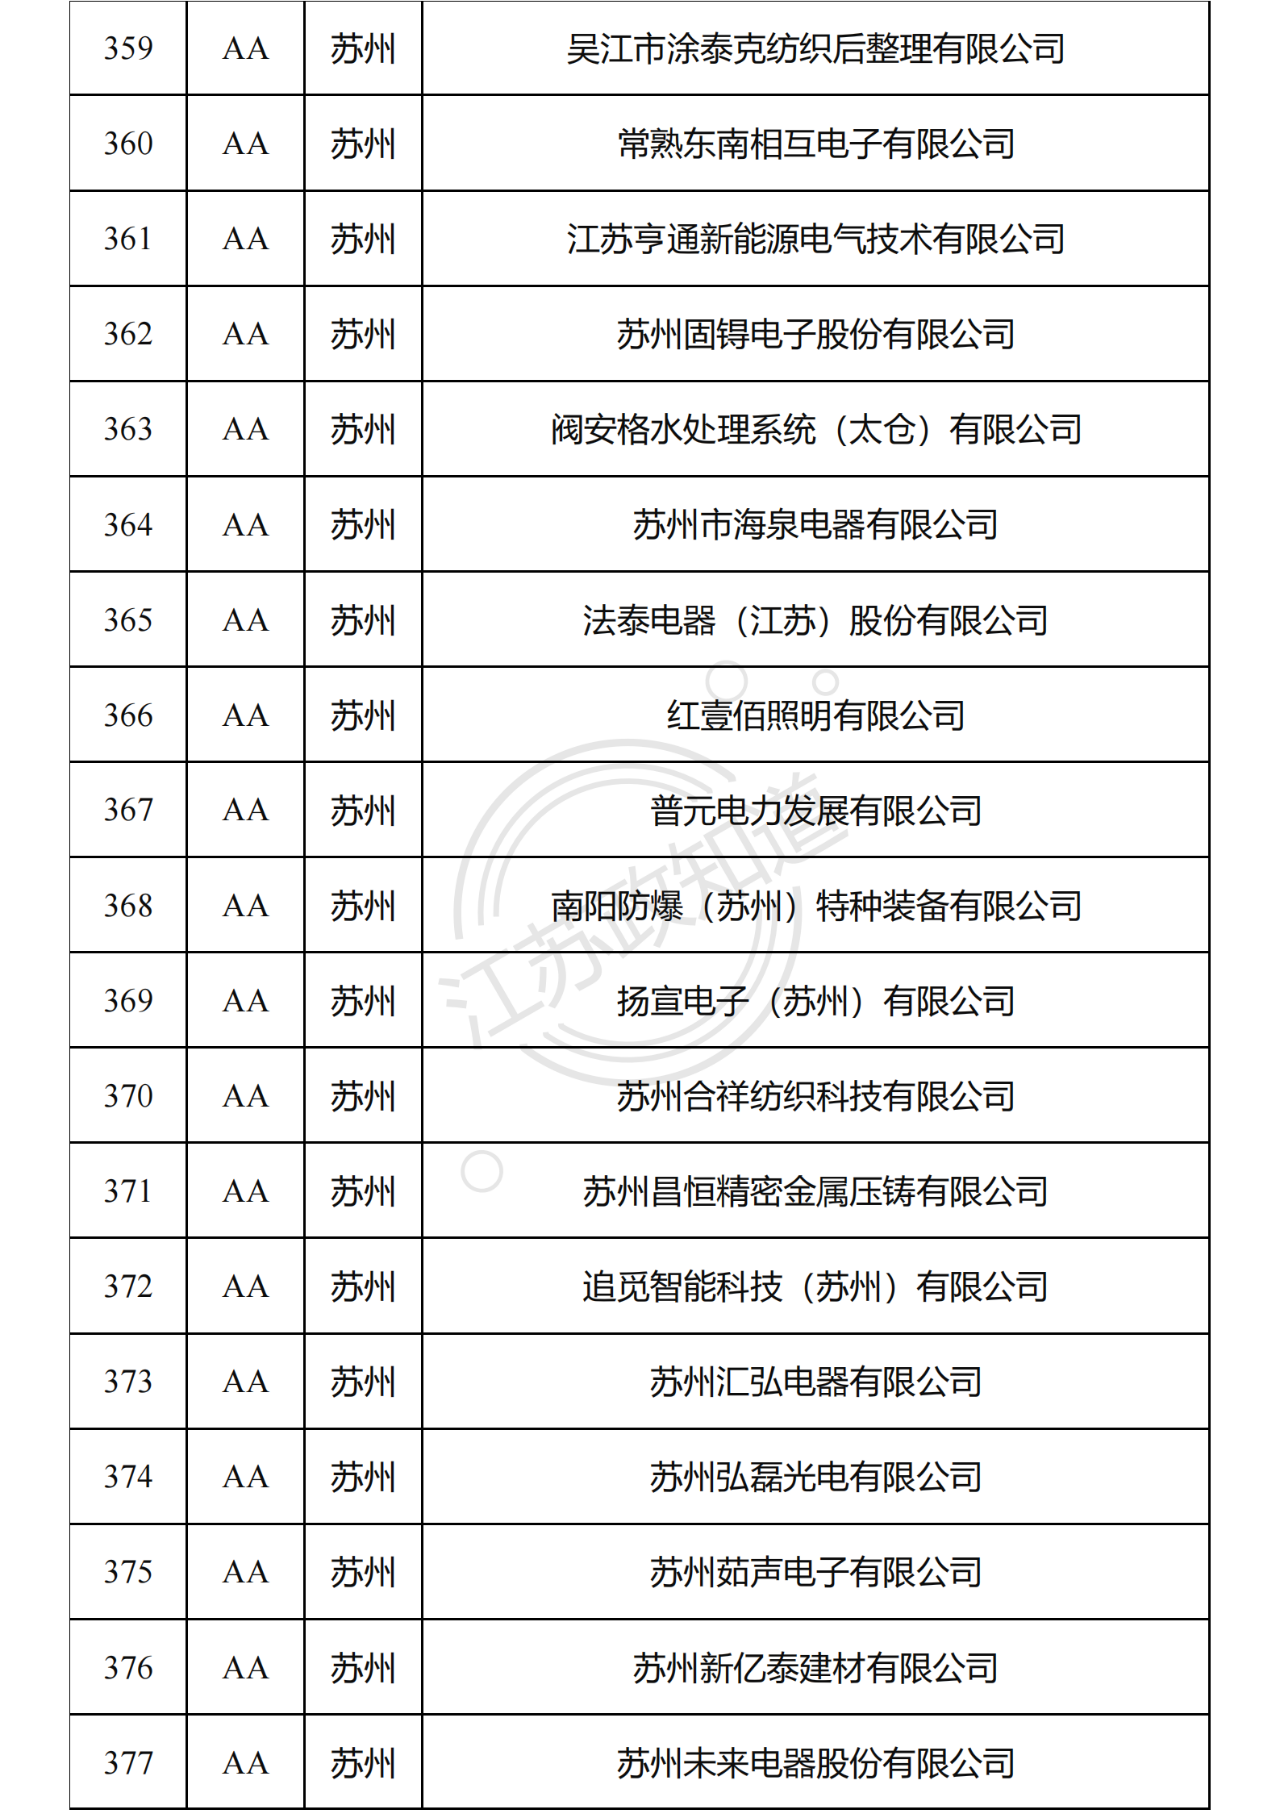 2022年度江苏省两化融合管理体系贯标试点企业培育对象拟认定名单21.png